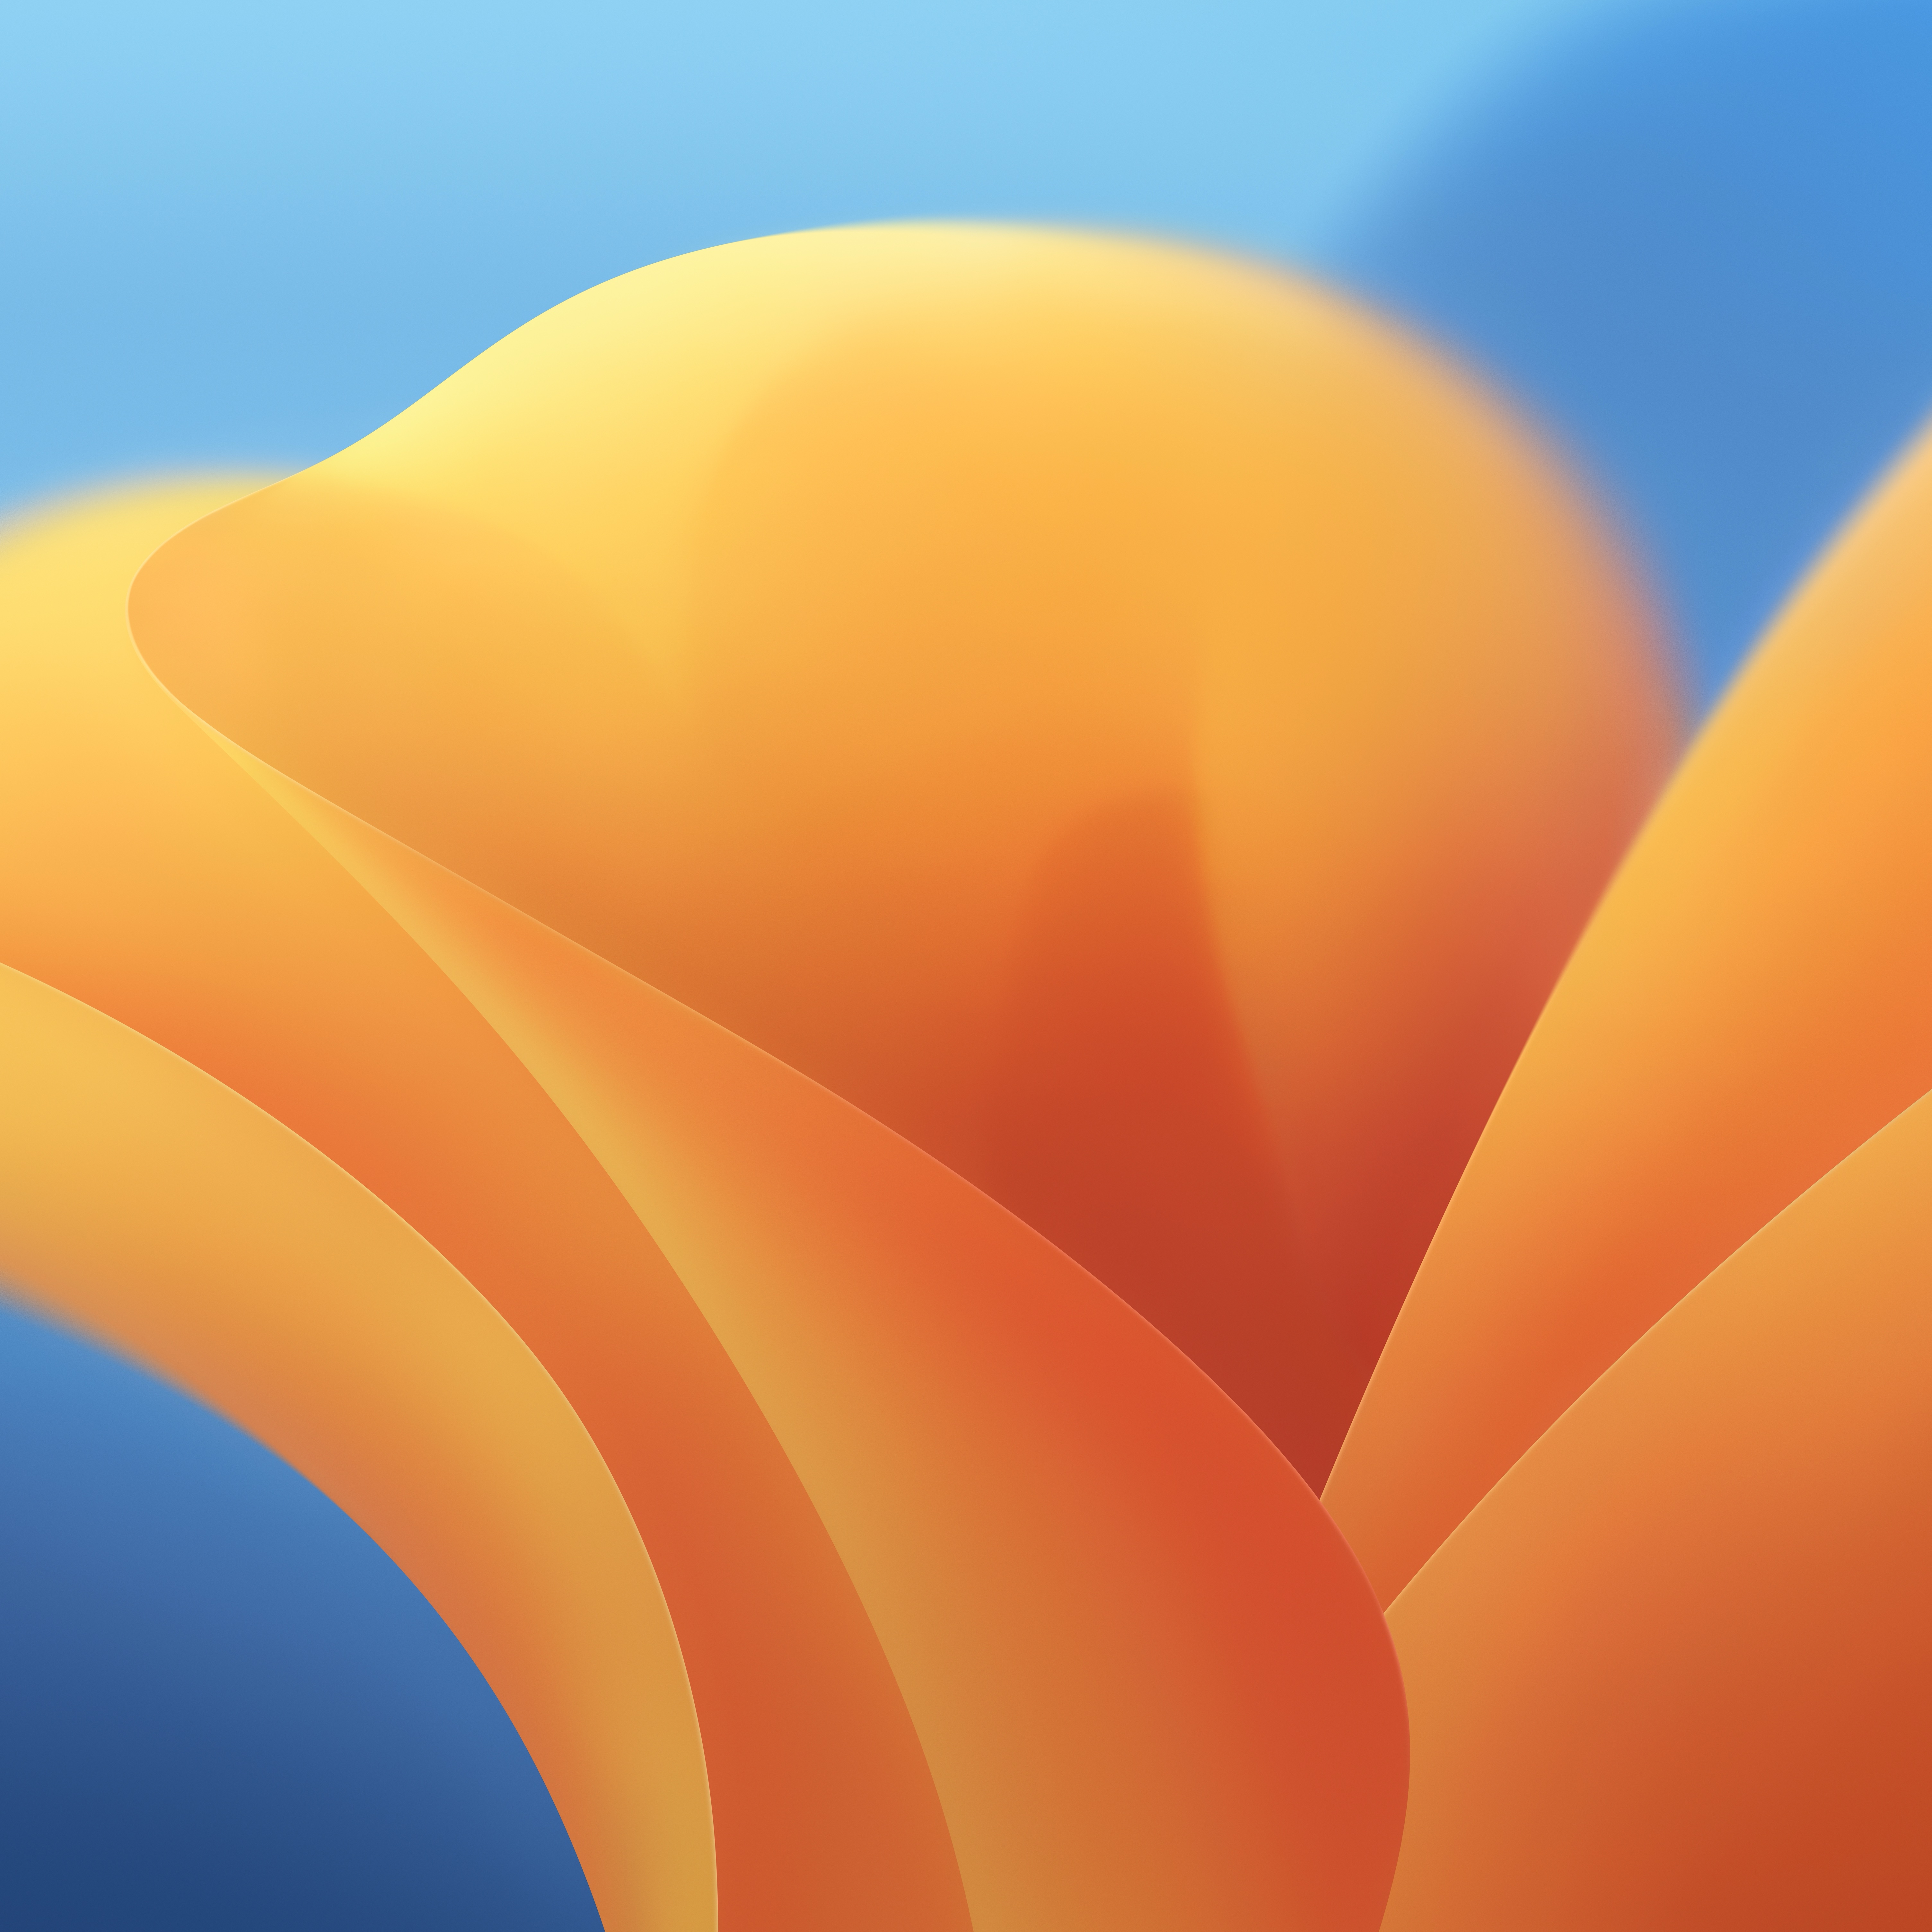 Download the new macOS 13 Ventura wallpaper